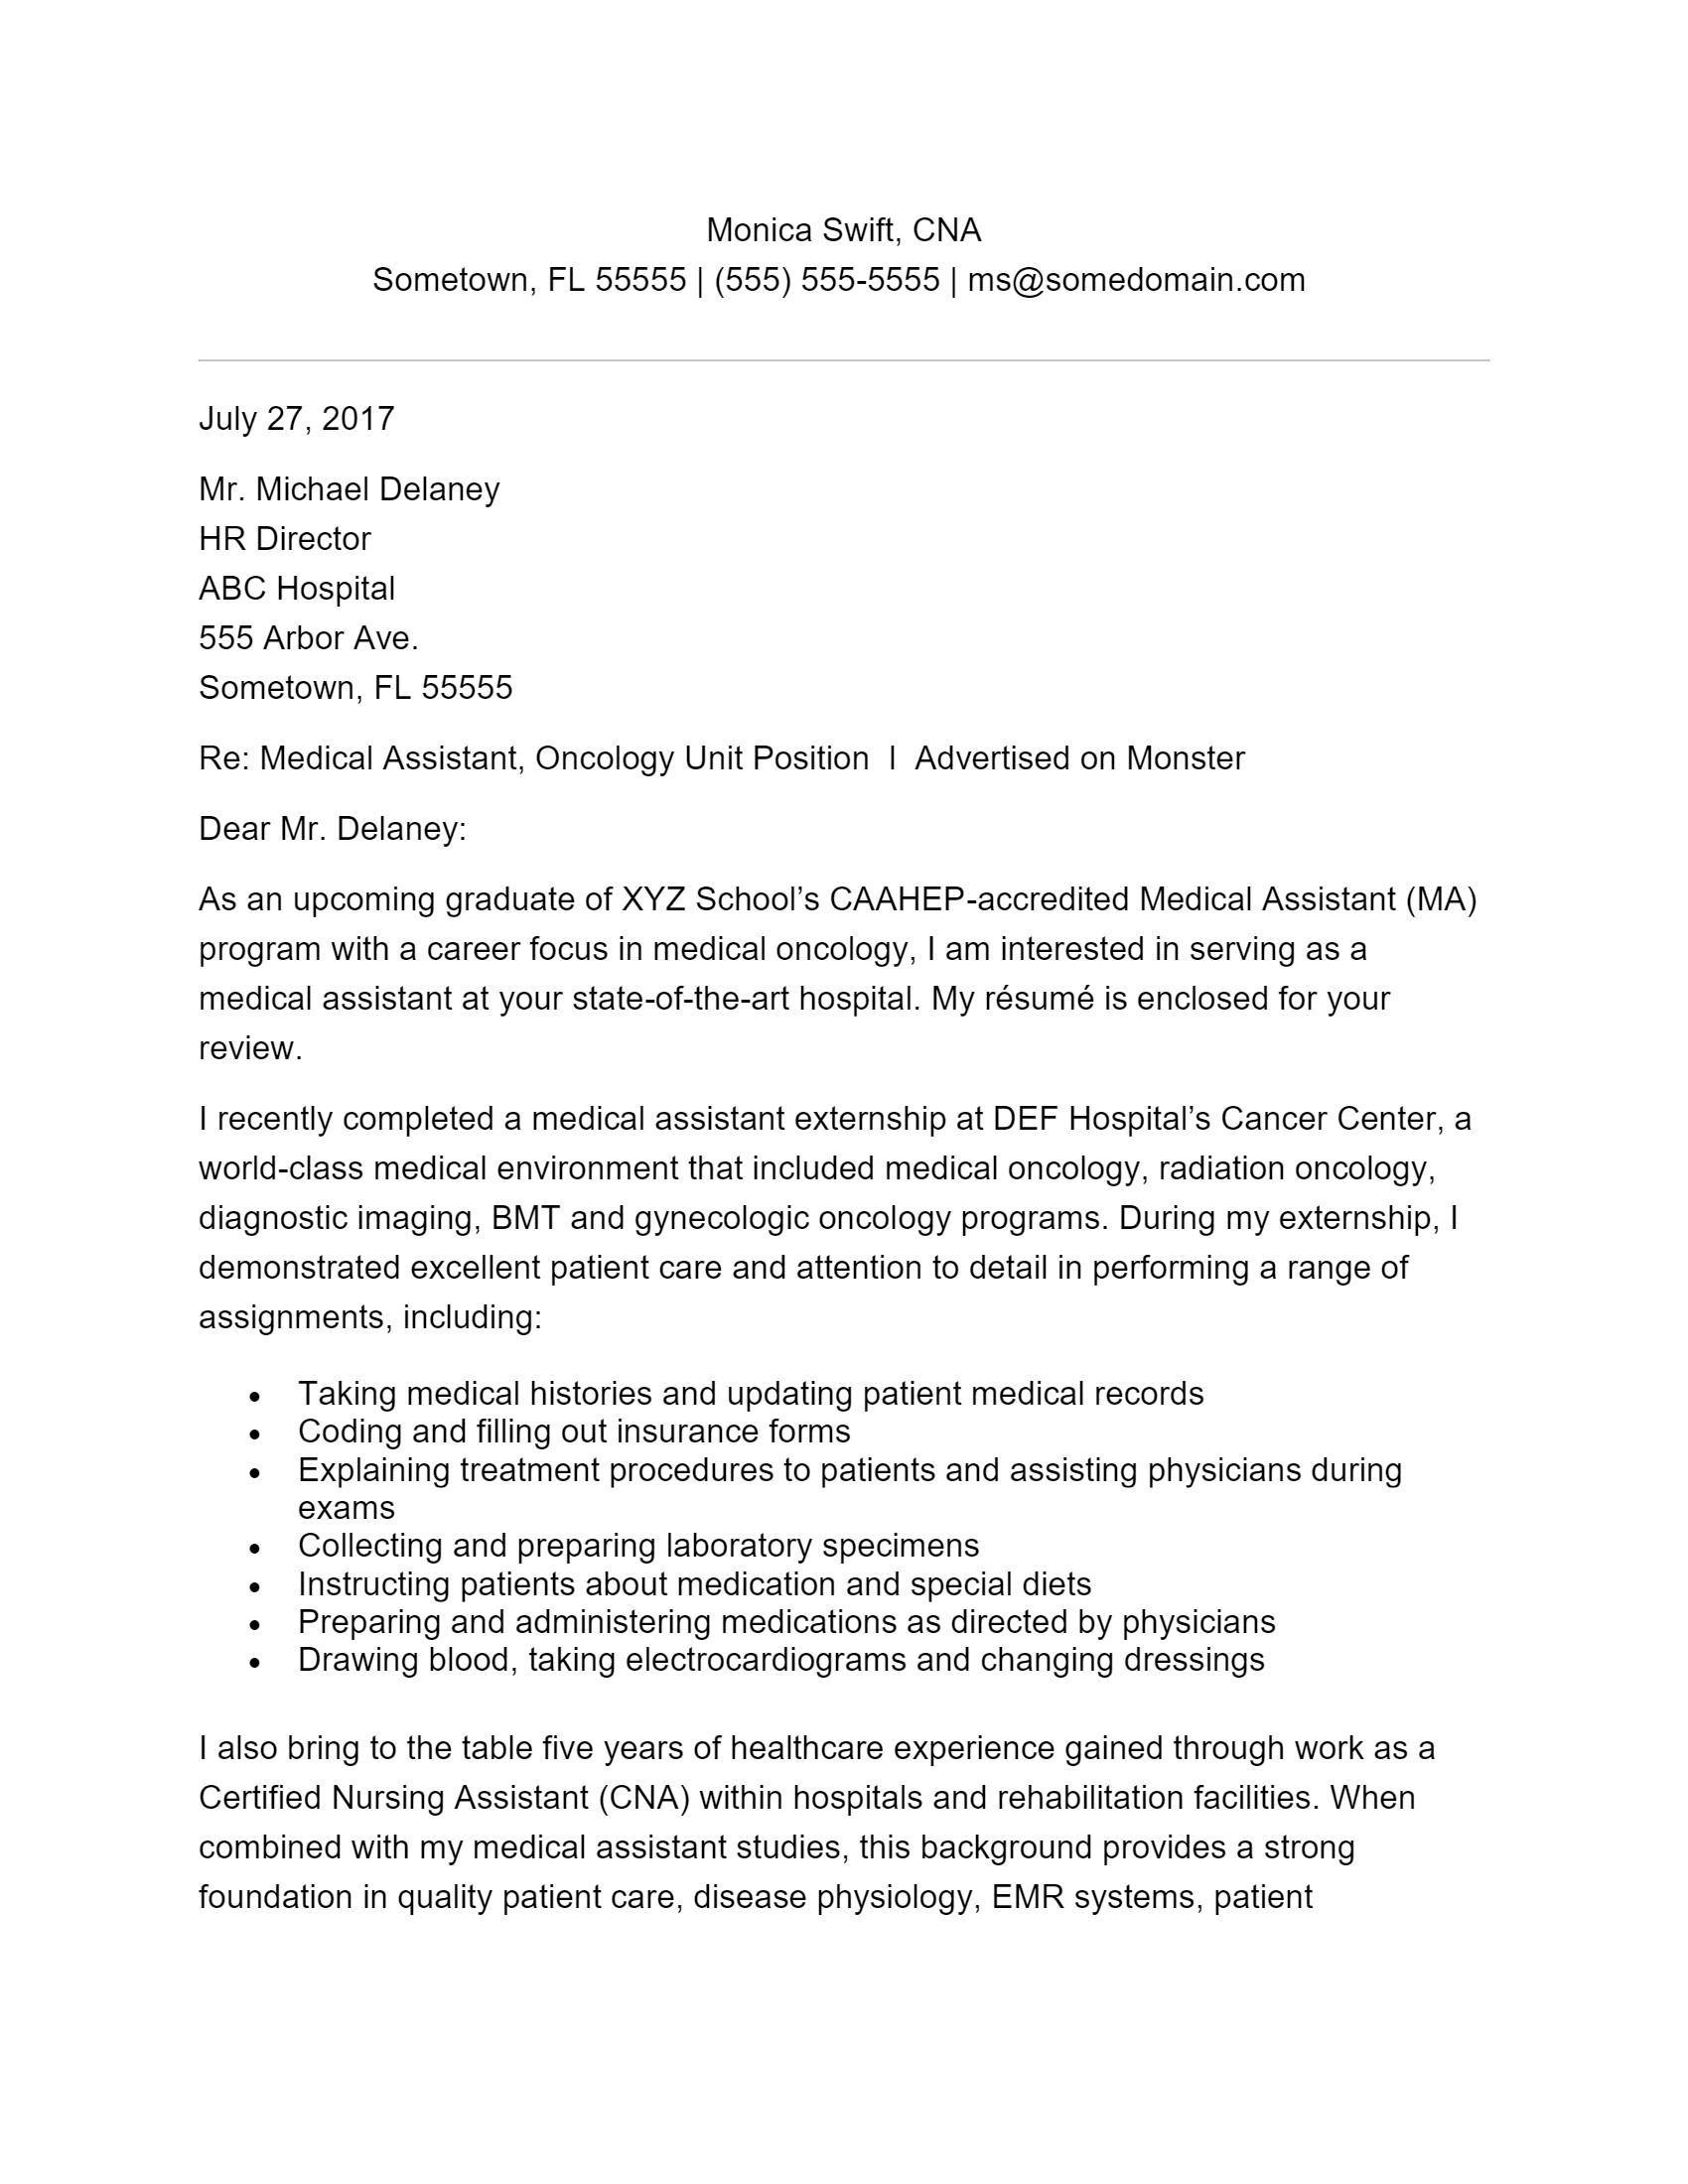 medical assistant cover letter pdf